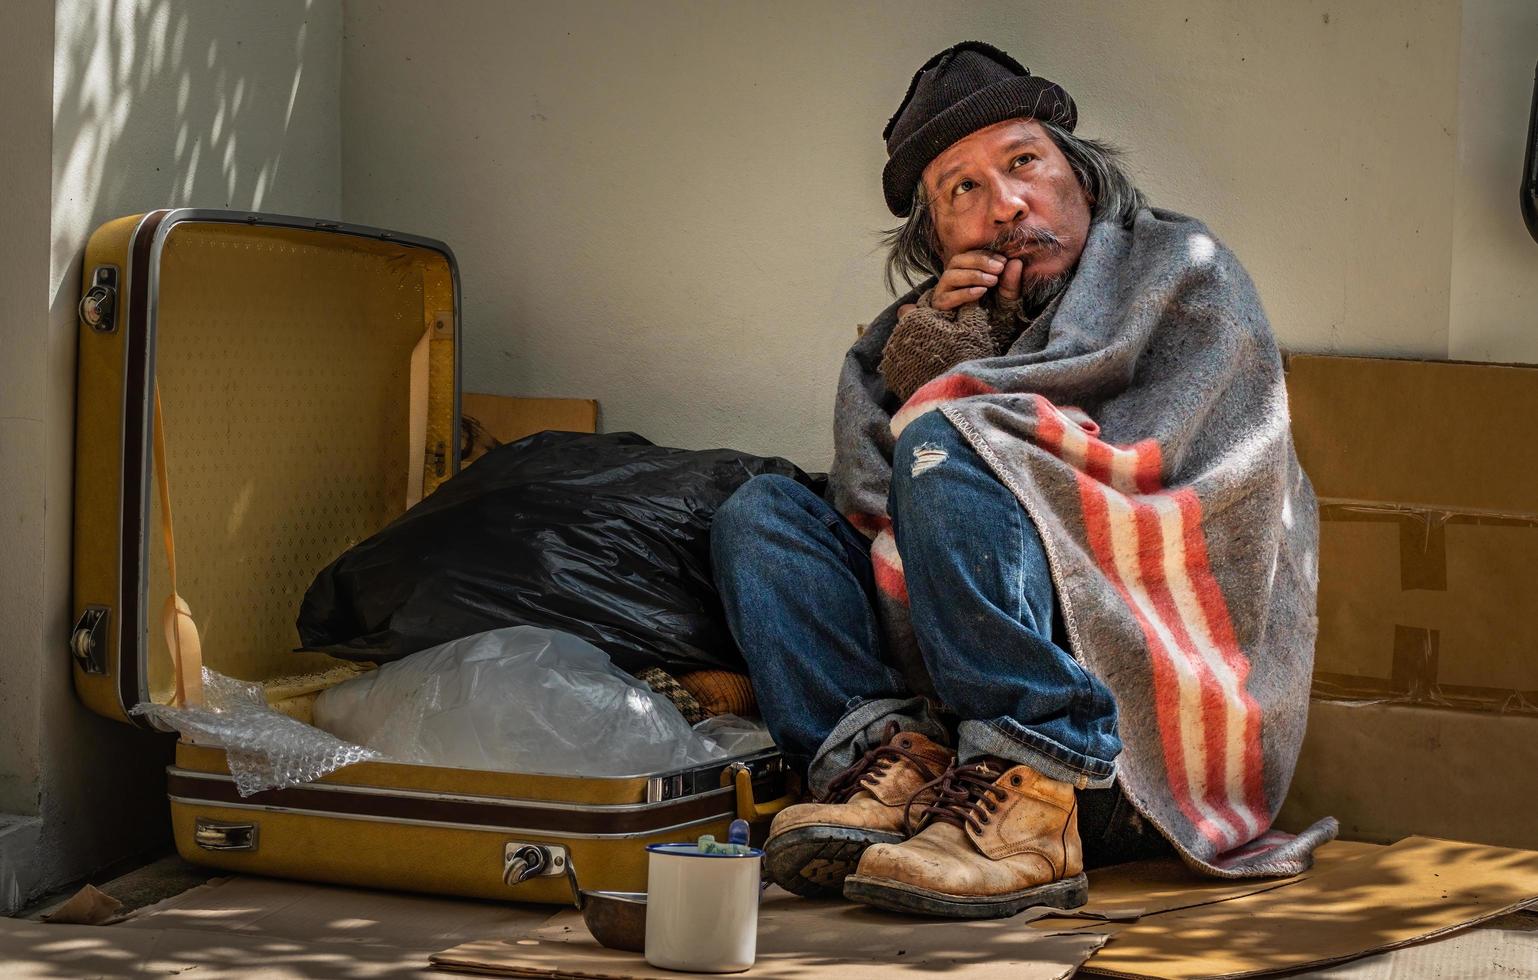 il senzatetto attende qualsiasi aiuto e donazione dal passante. foto